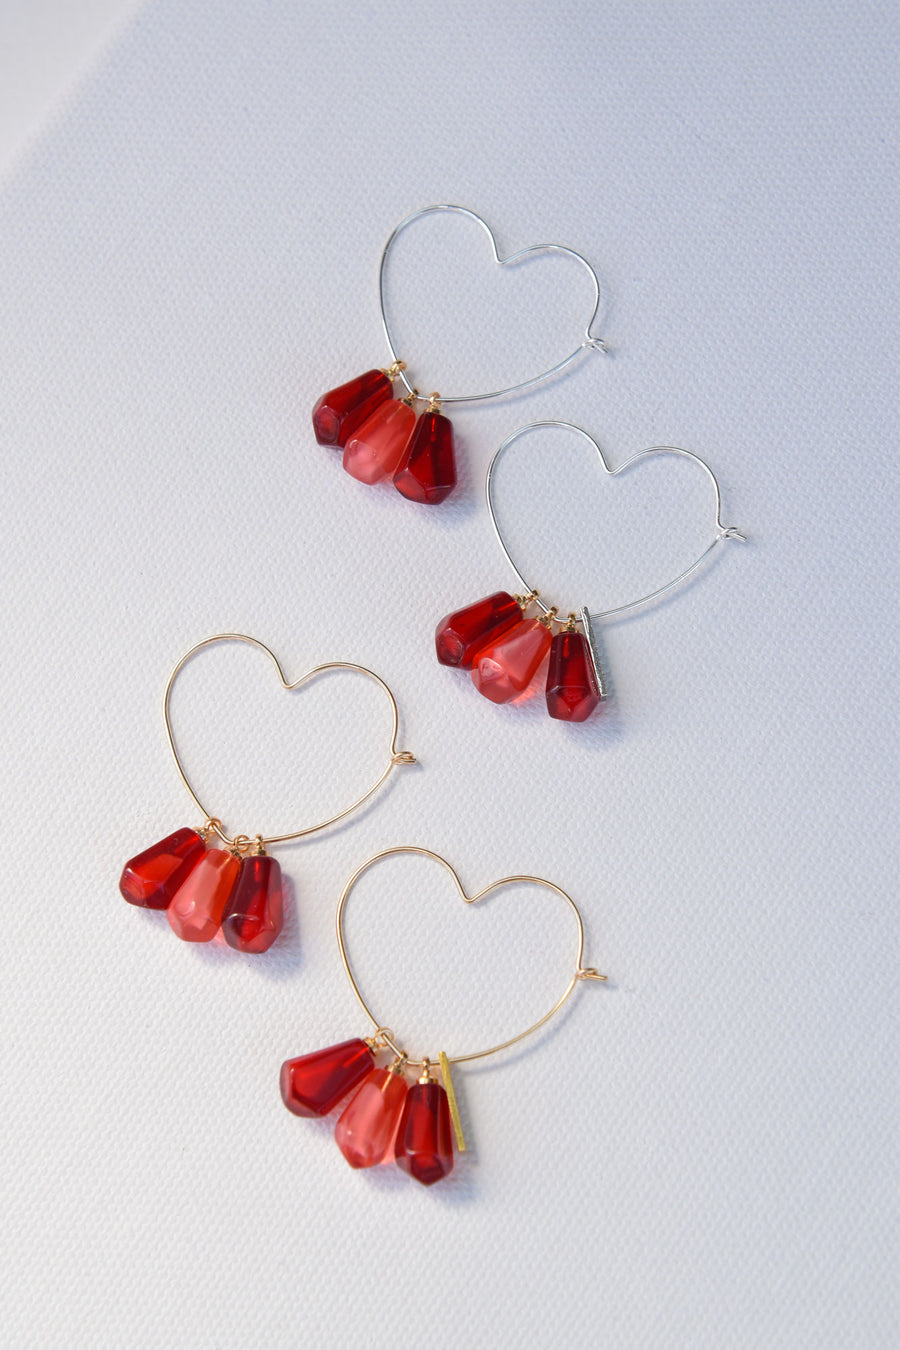 Pomegranate Seeds Earrings | Silver Earrings || Armenian Jewelry ...